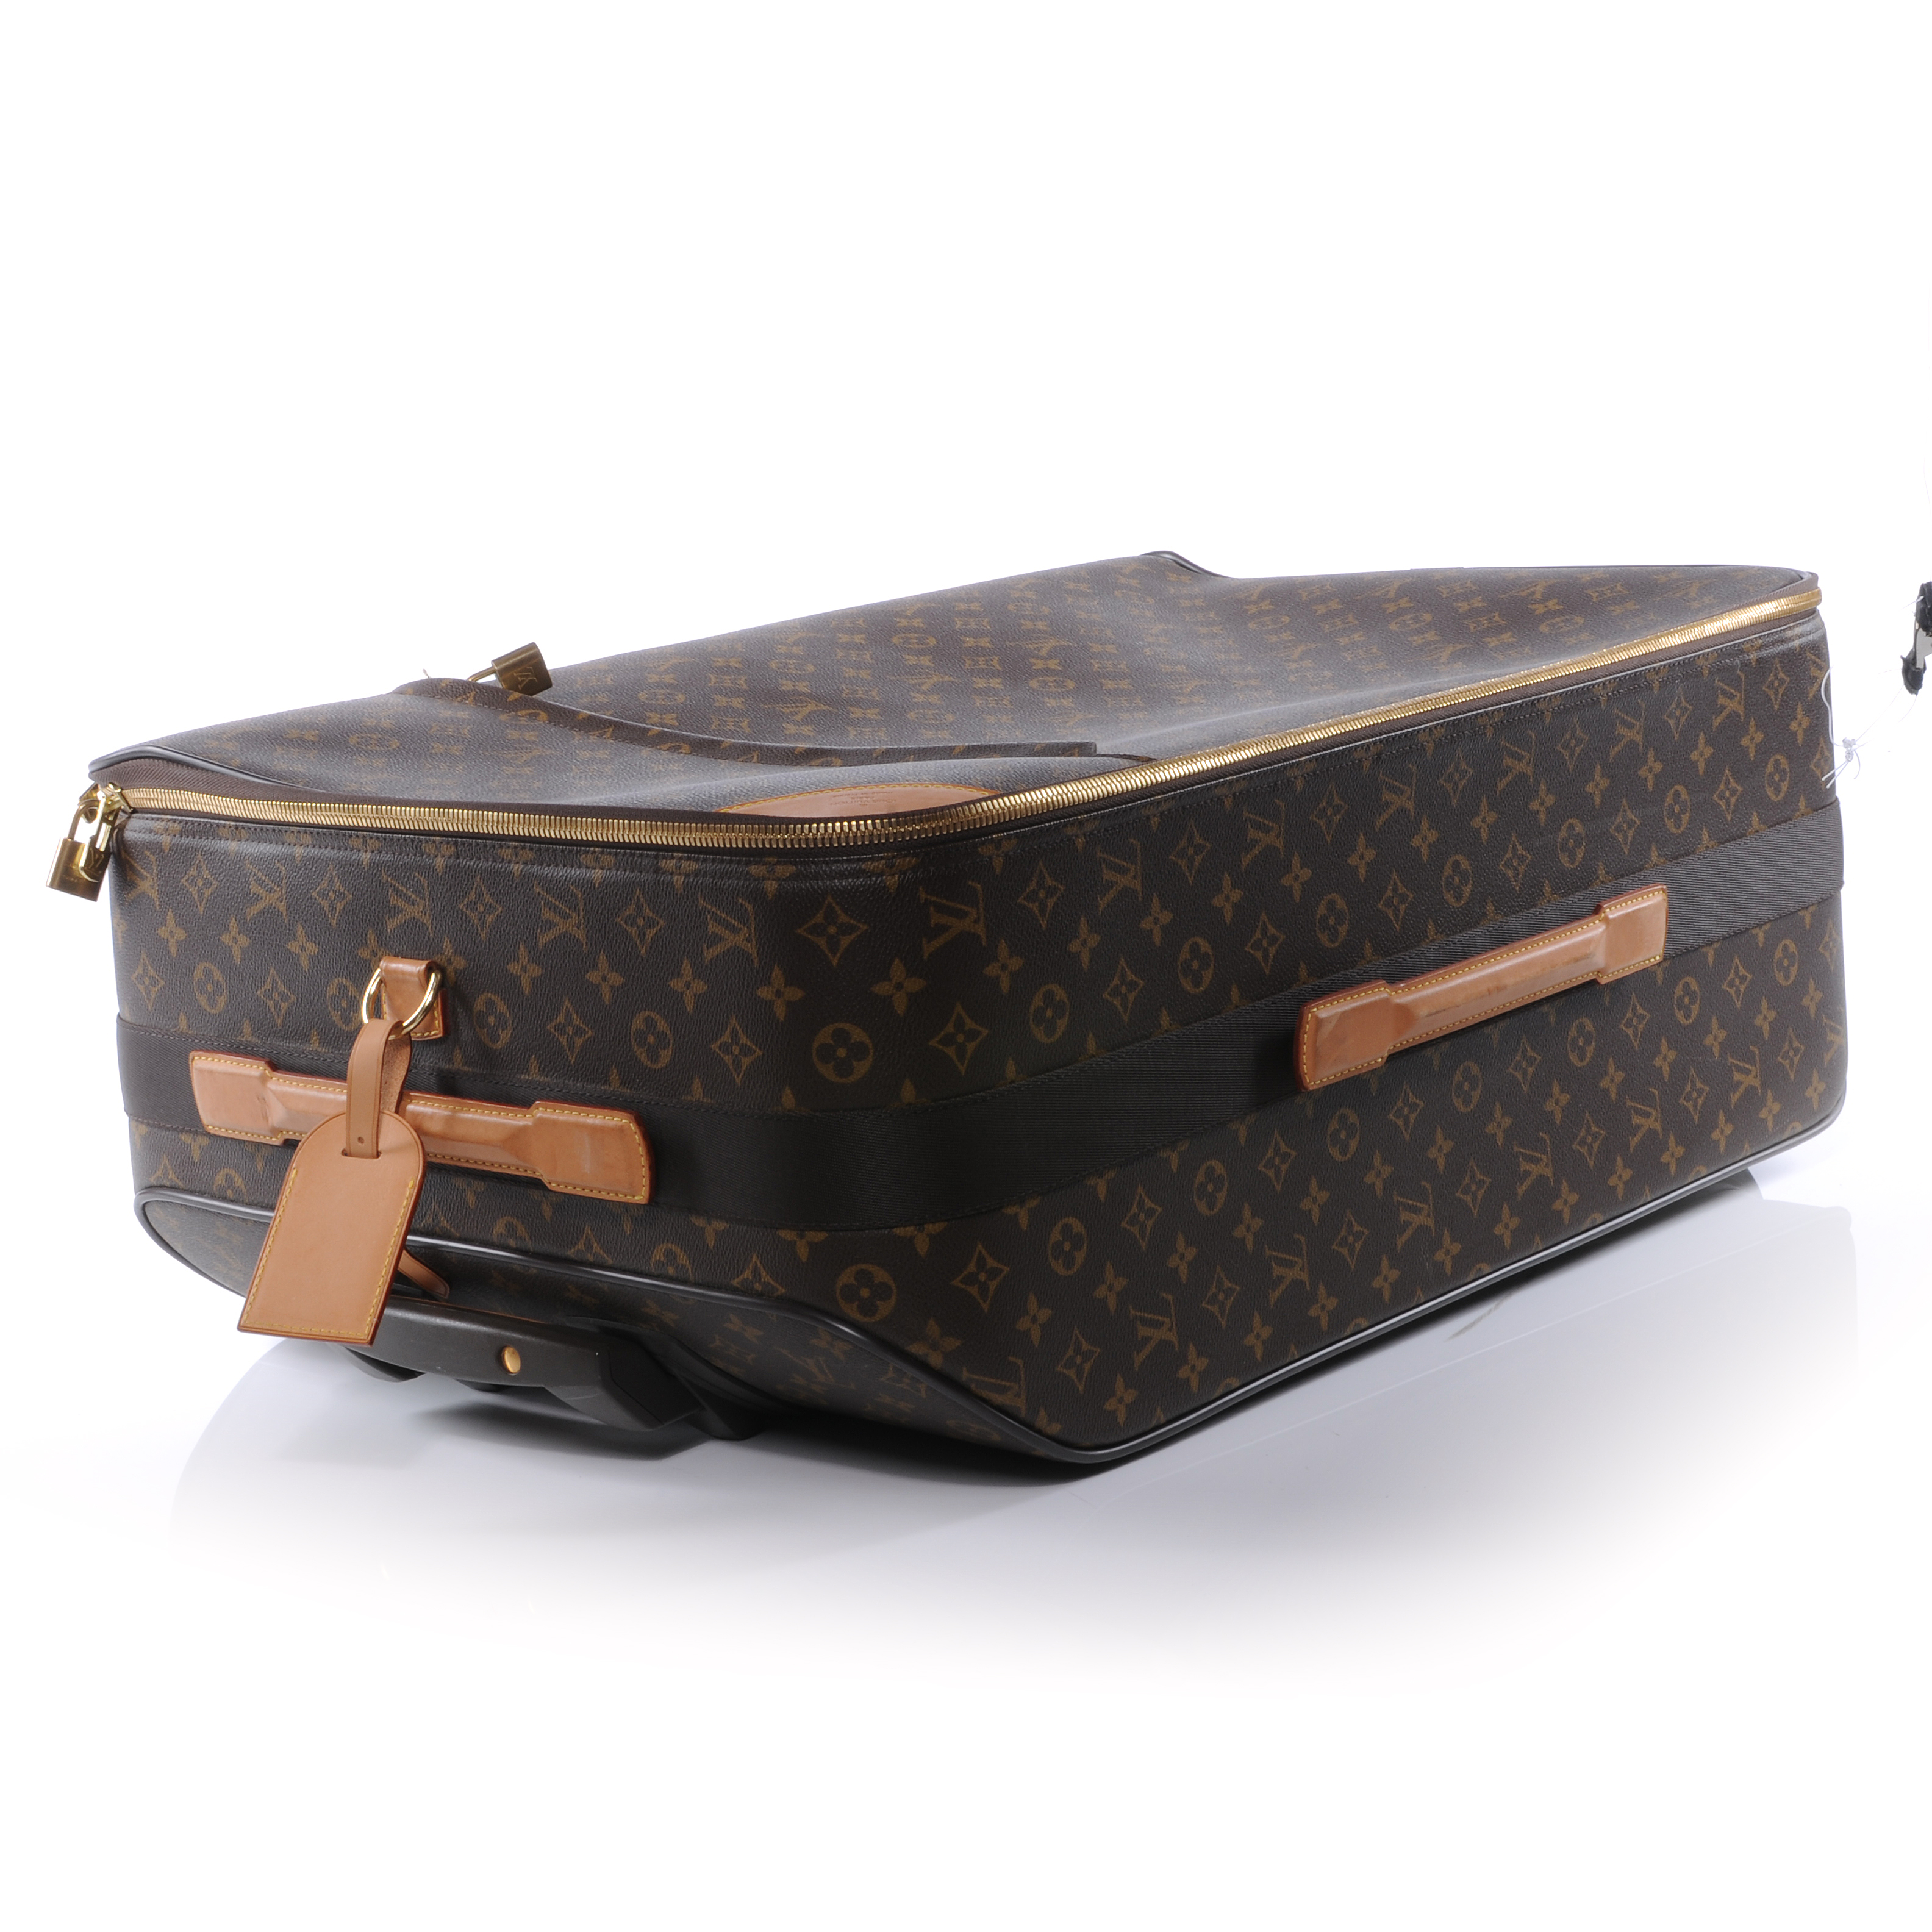 LOUIS VUITTON Monogram Pegase 70 Rolling Suitcase Luggage 40105